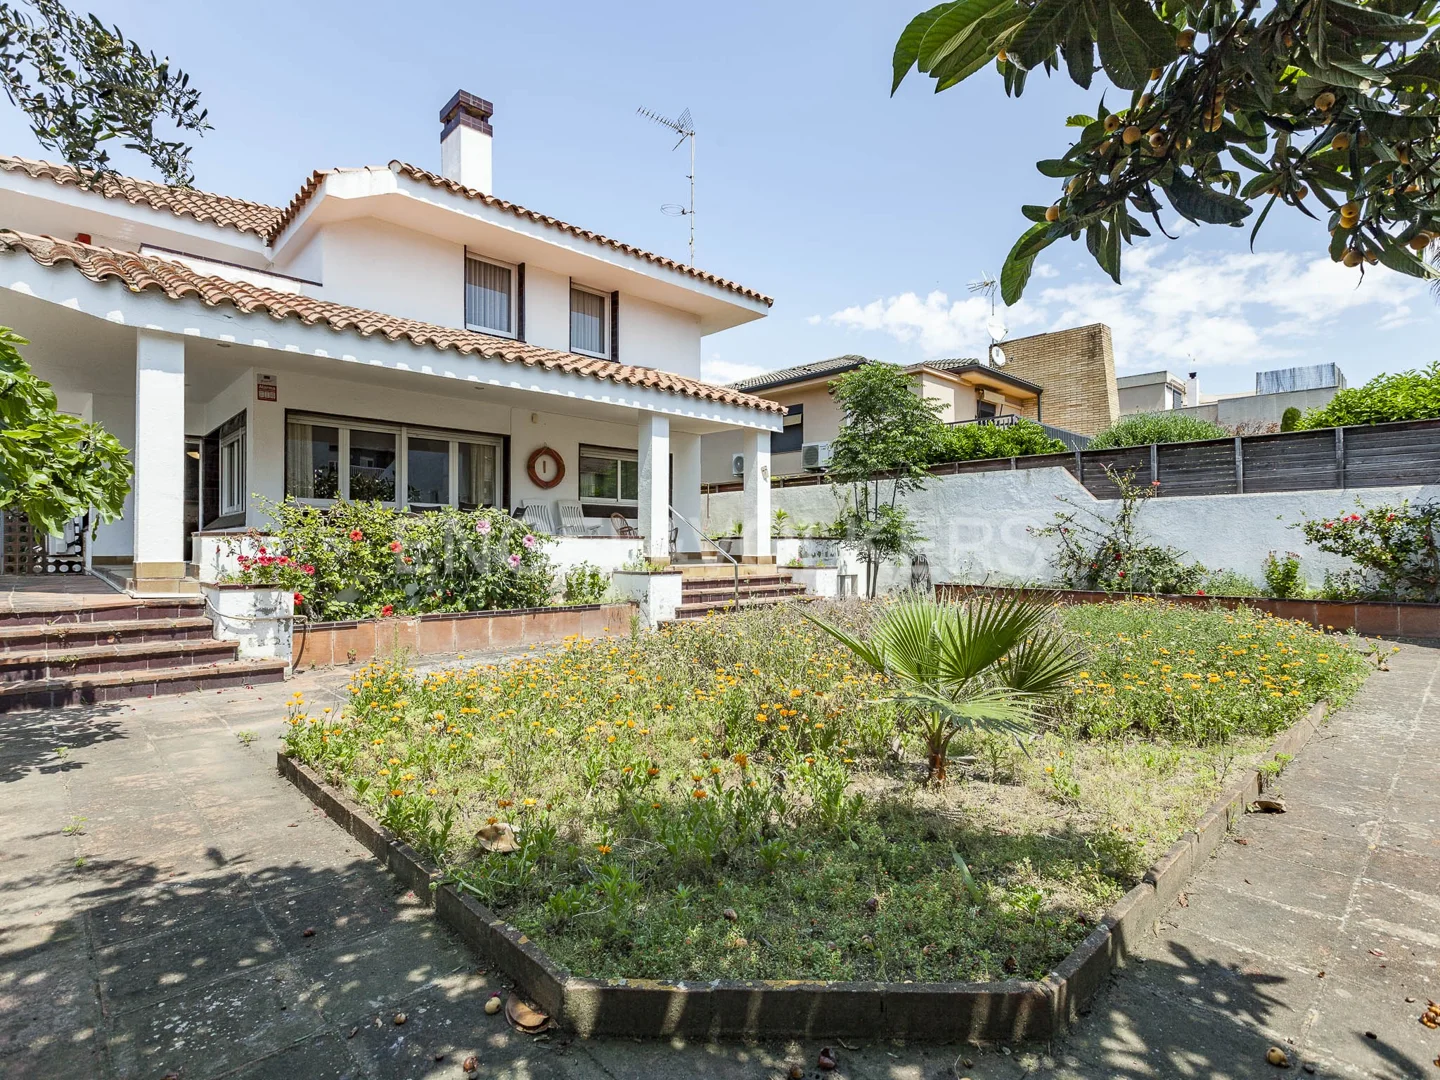 Casa unifamiliar con jardín en el centro de Vilassar de Mar